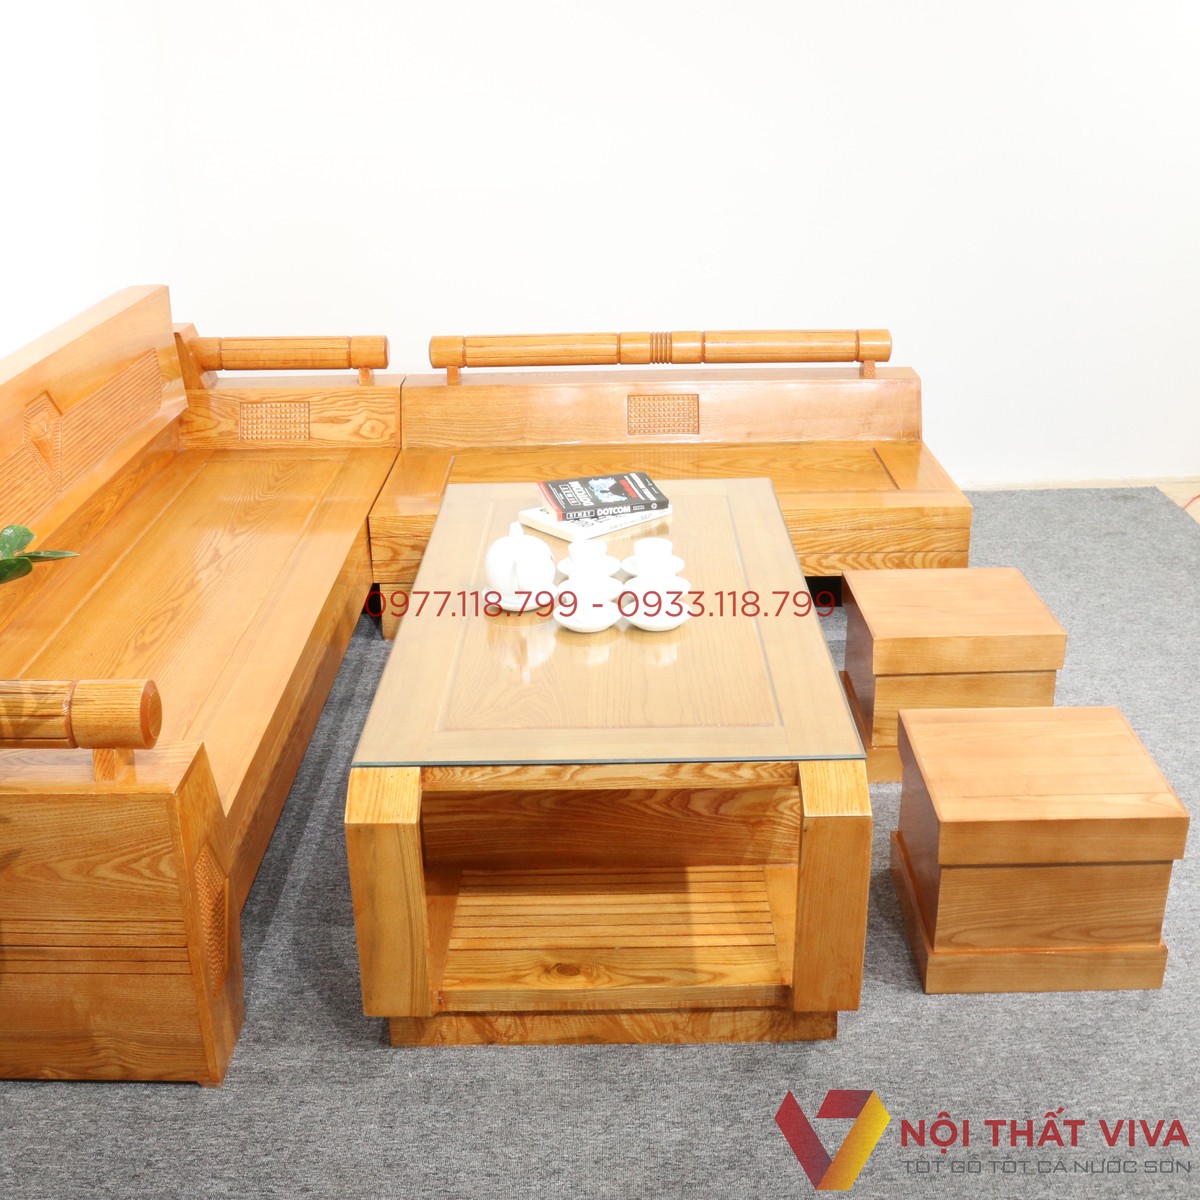 Khám phá tất tần tật các mẫu bàn ghế sofa gỗ Sồi phổ biến hiện nay